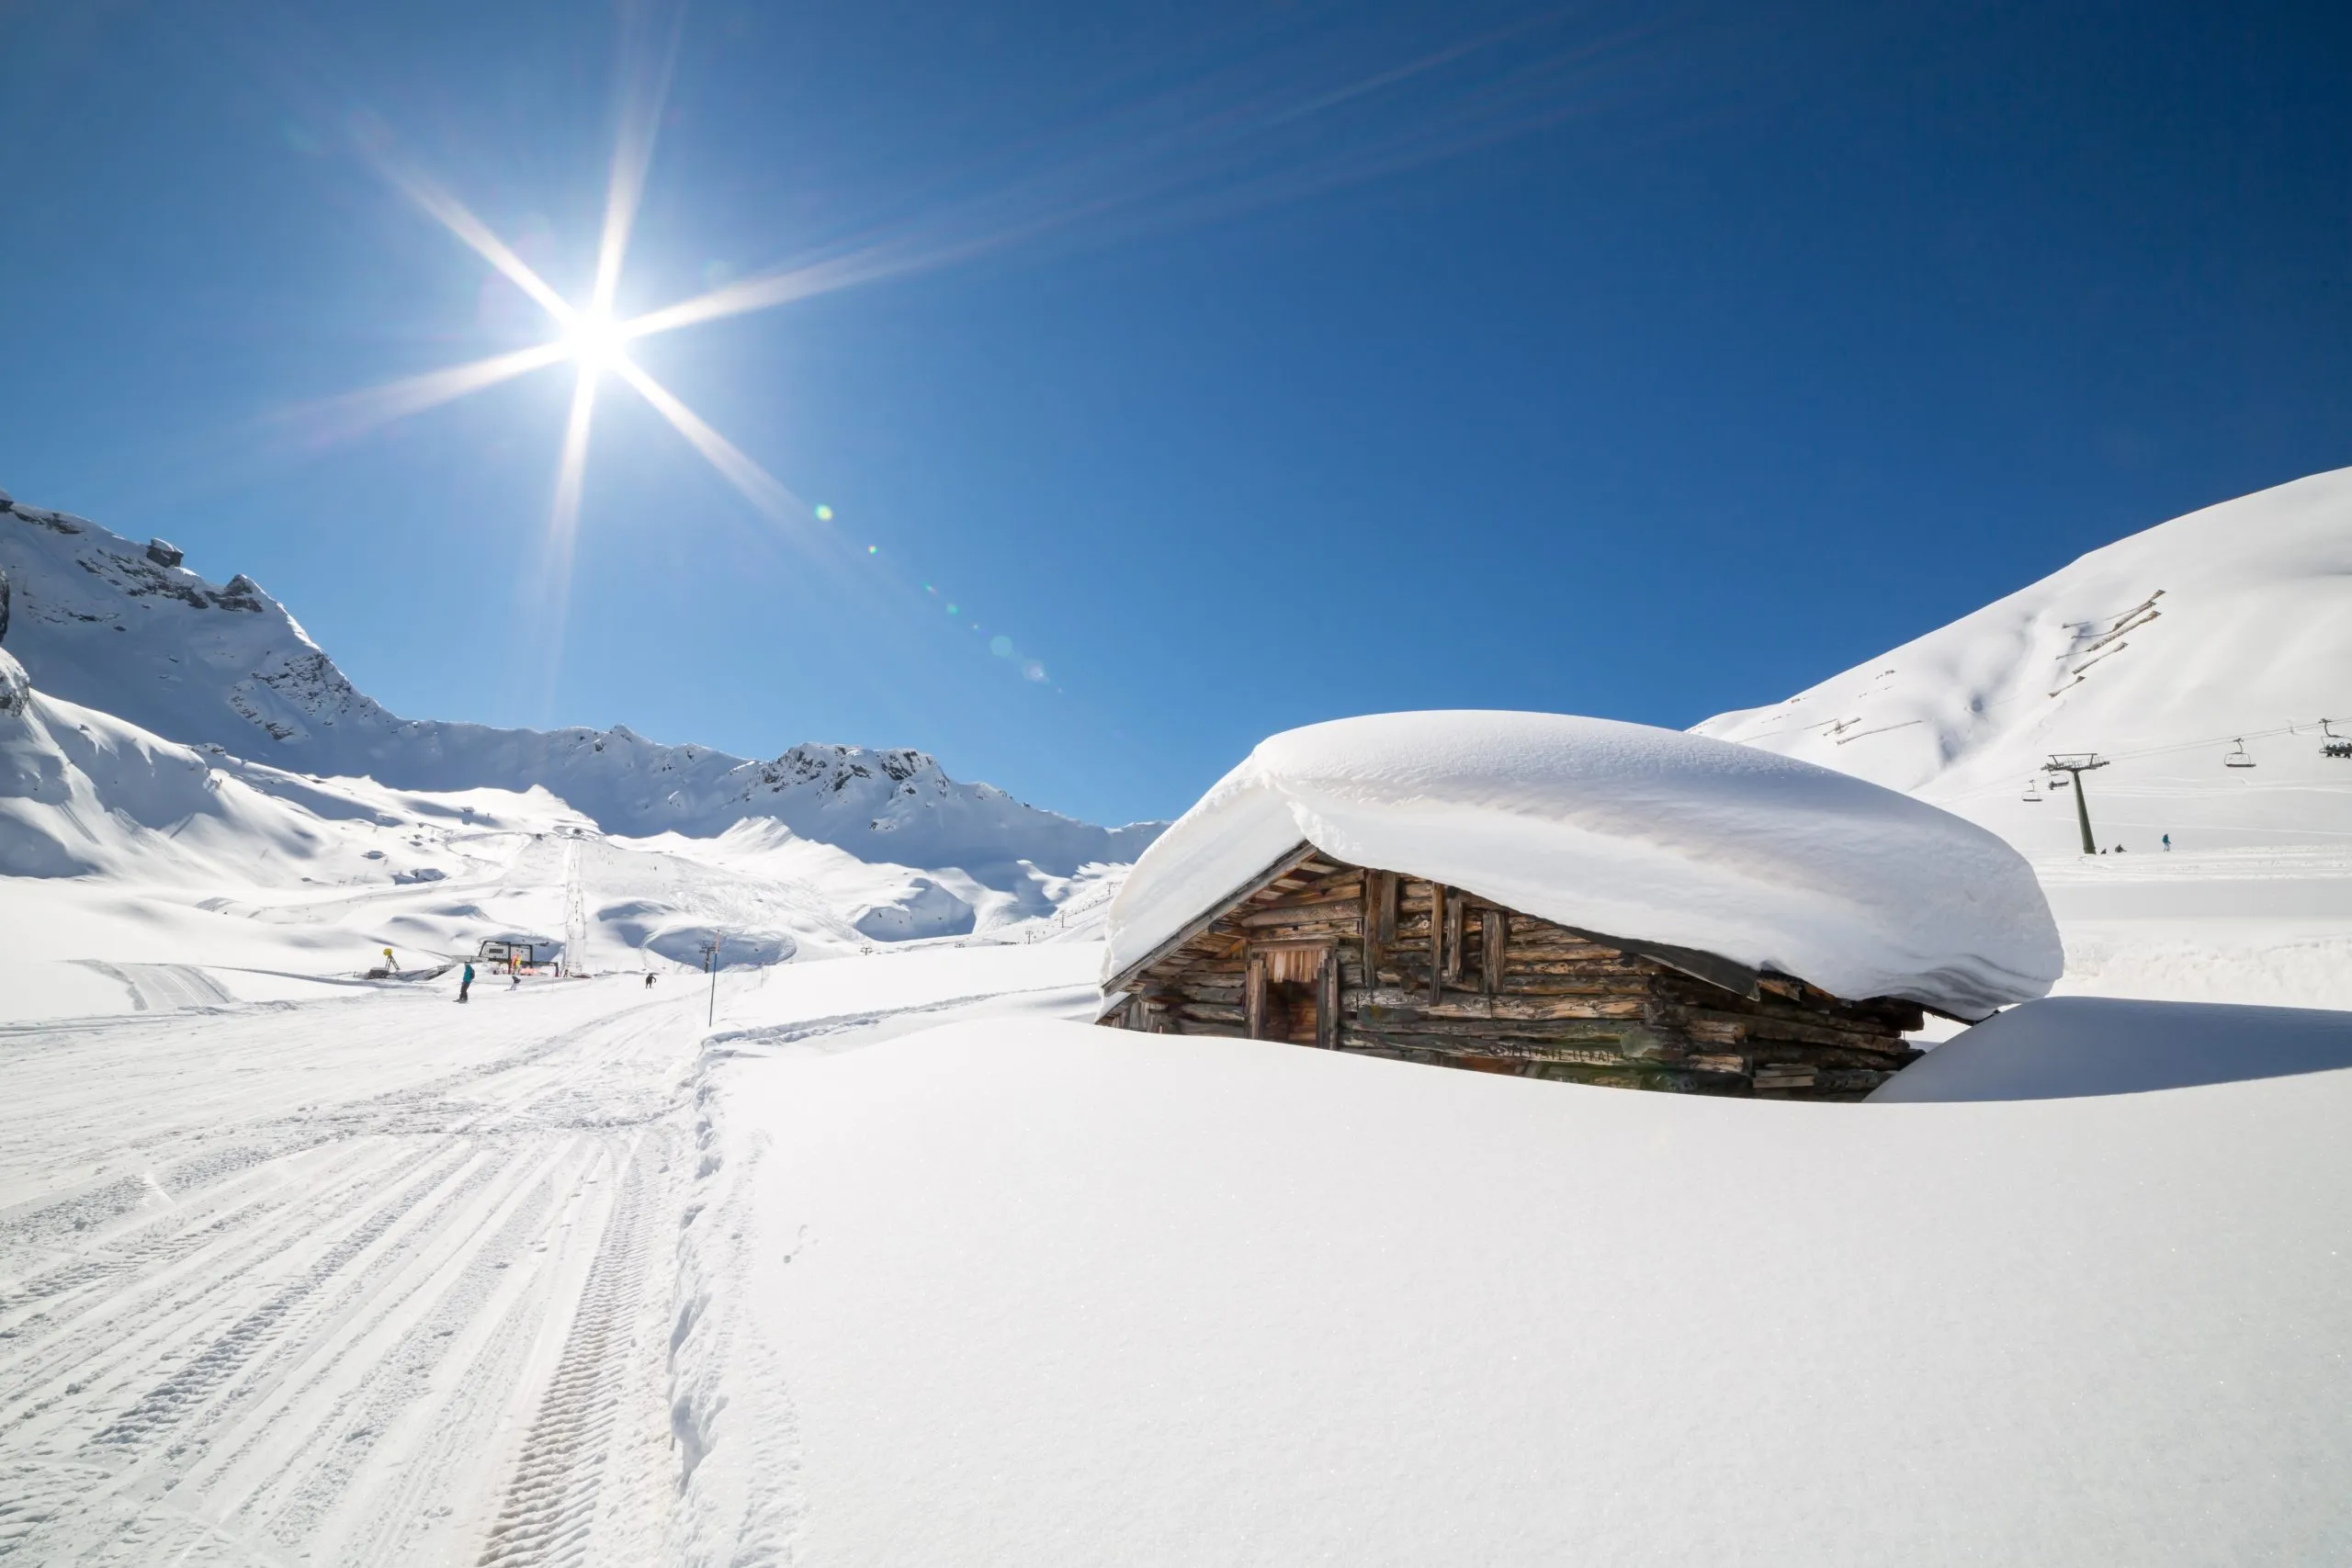 Beautiful winter scenery in Ciampac ski area, Val di Fassa, Dolomites mountains, Italy